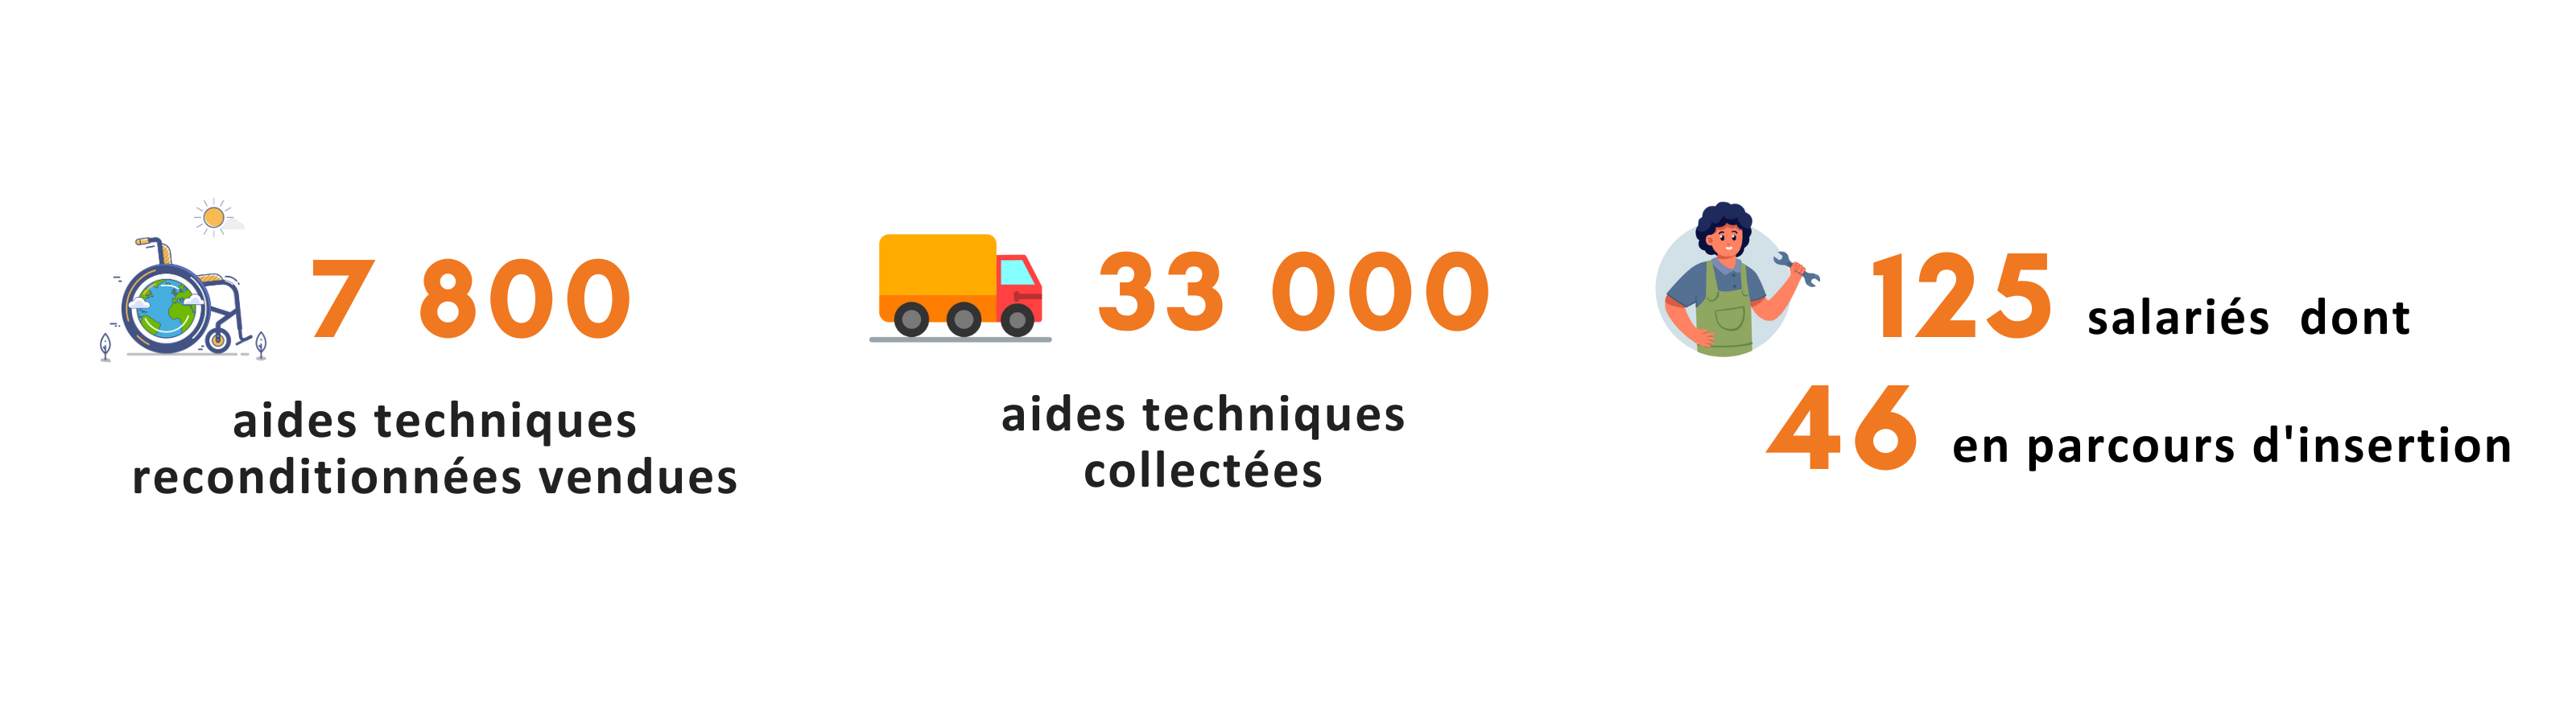 11000 aides techniques médicales reconditionnées, 100 emplois créés, 75000 aides techniques collectées